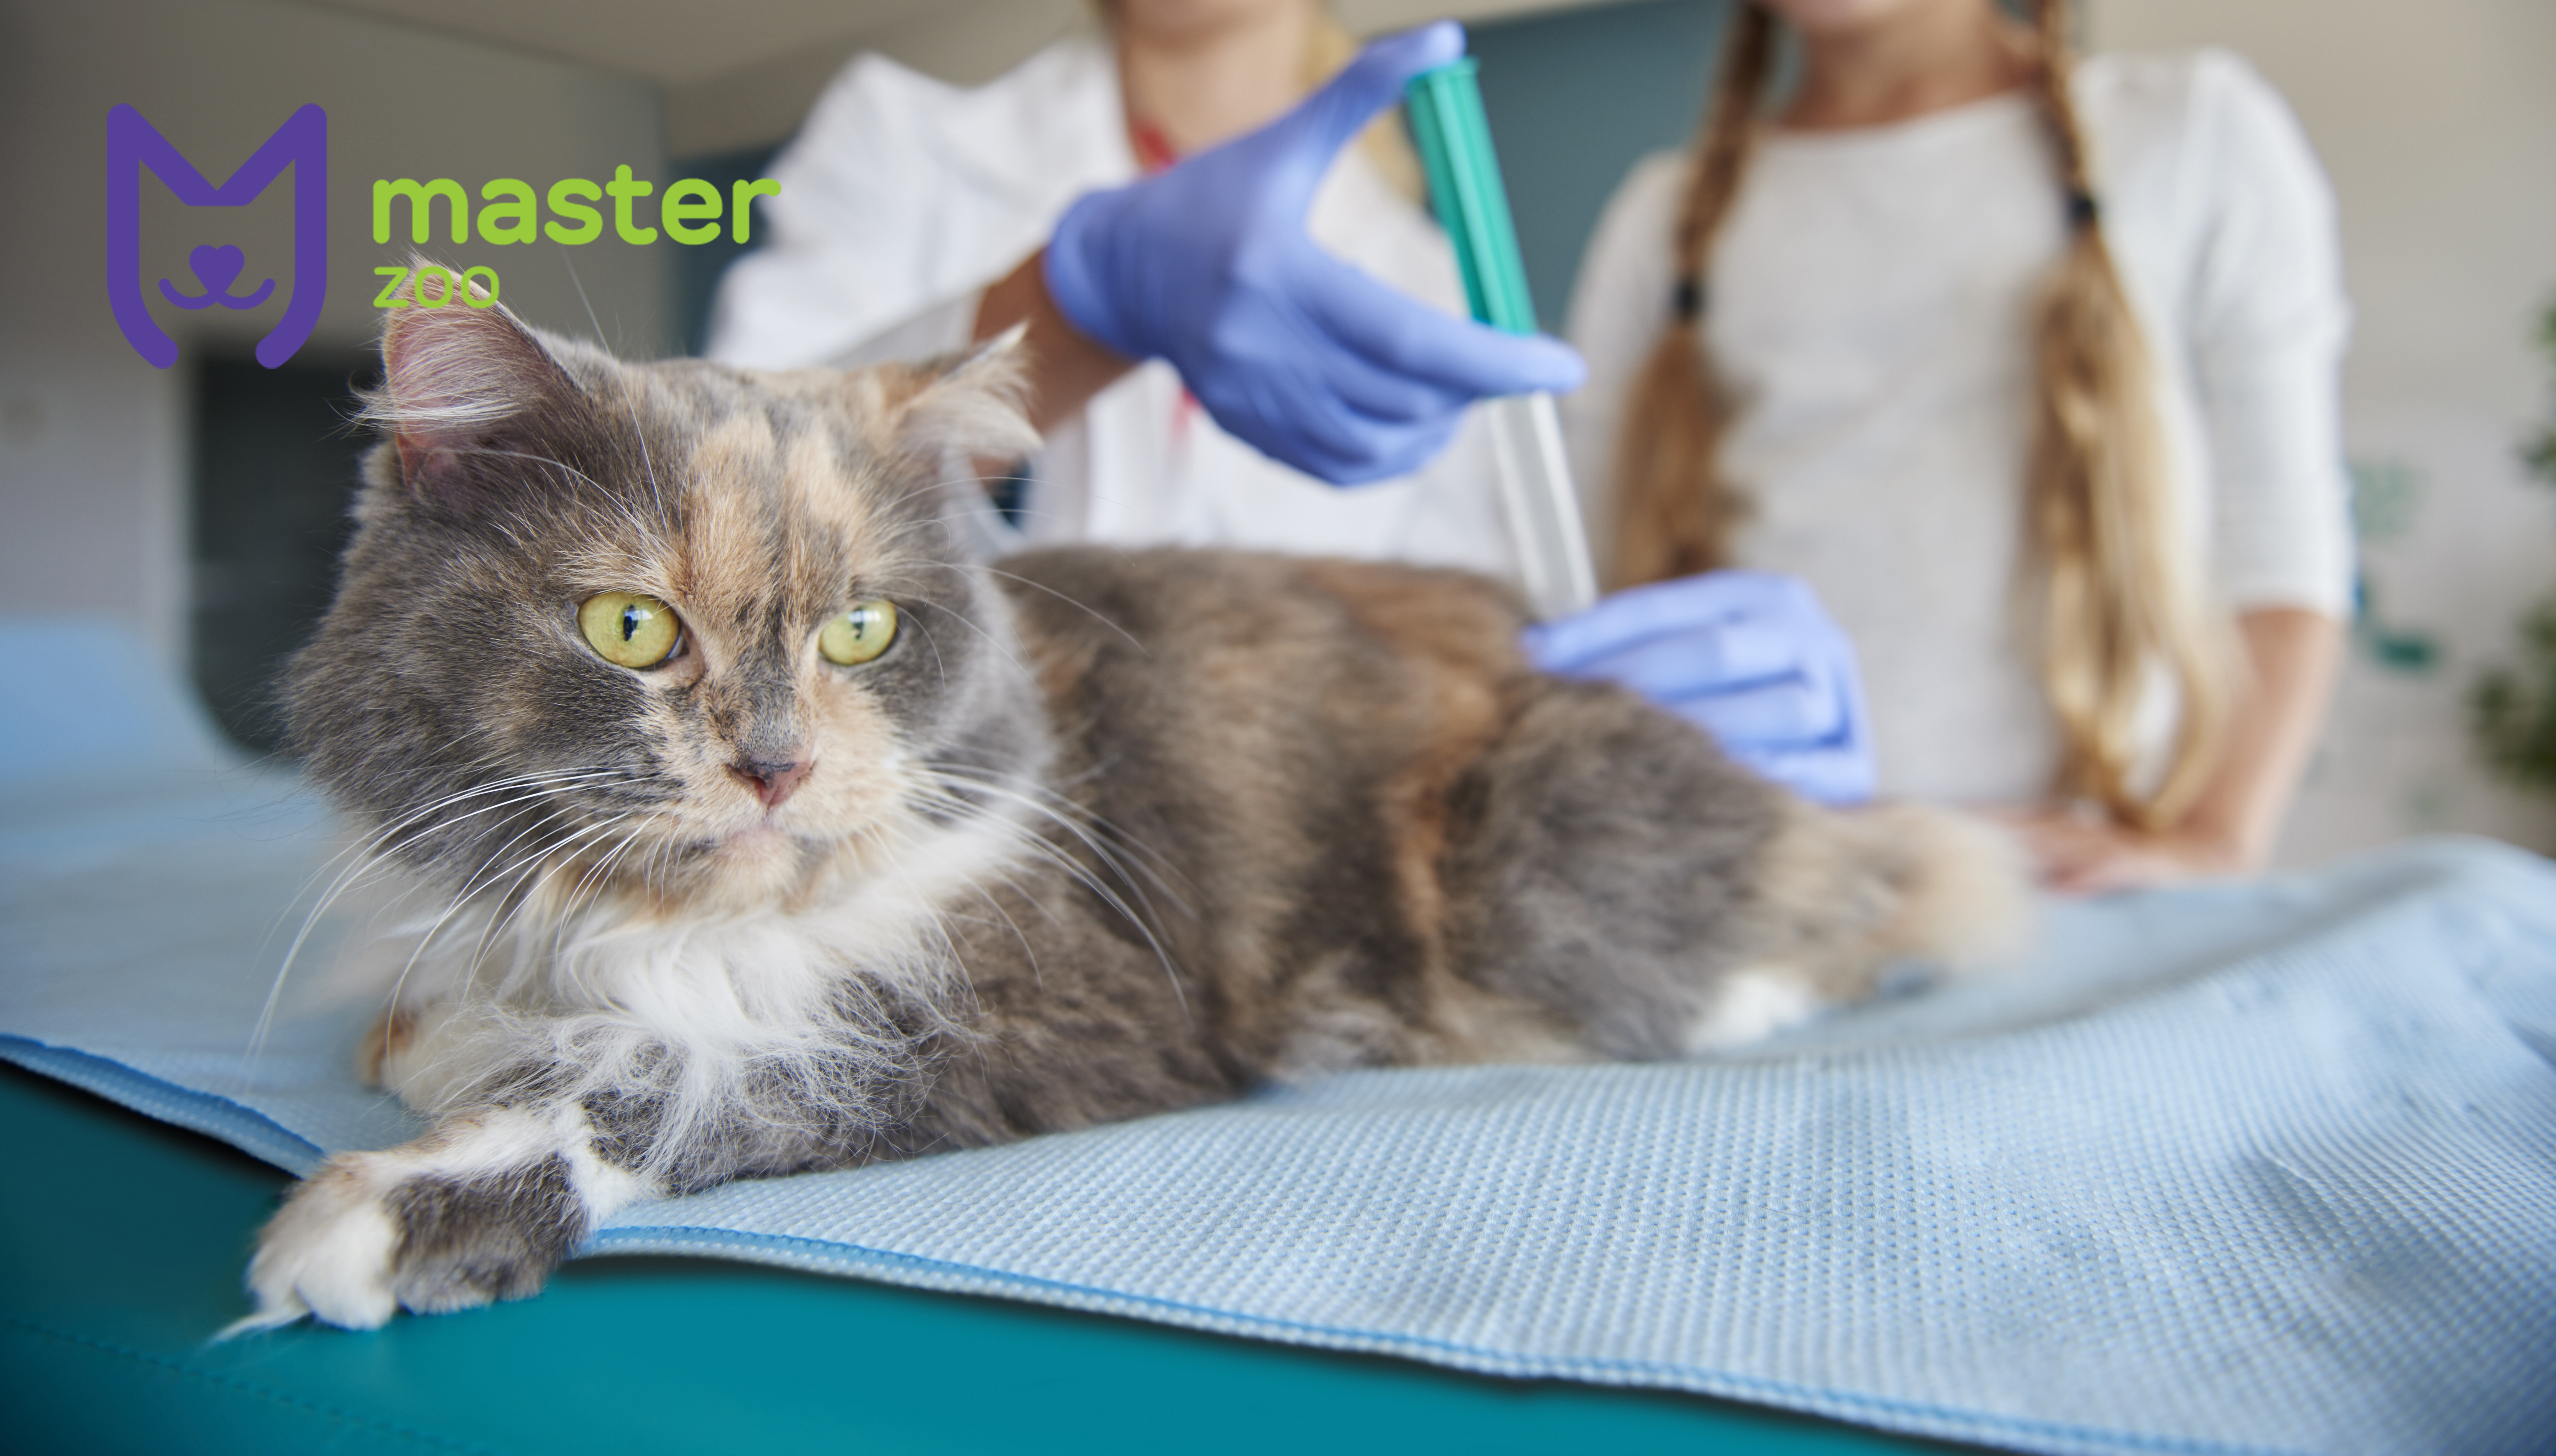 укол для кота у ветеринара | Зоомагазин MasterZoo